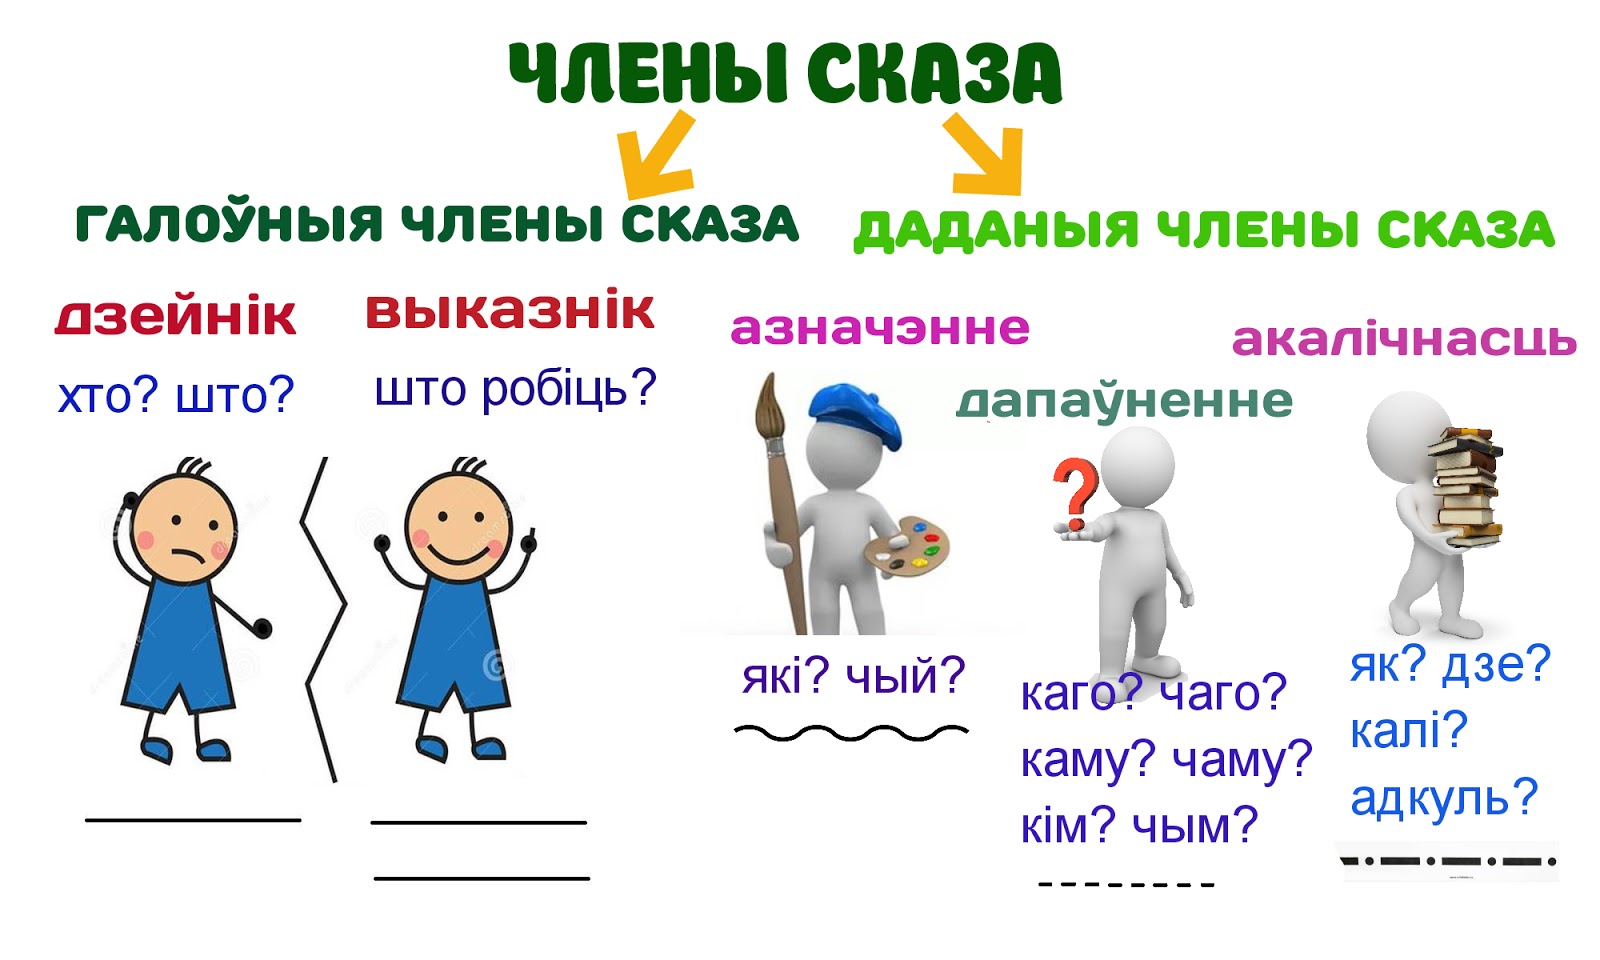 белорусский язык все члены сказа